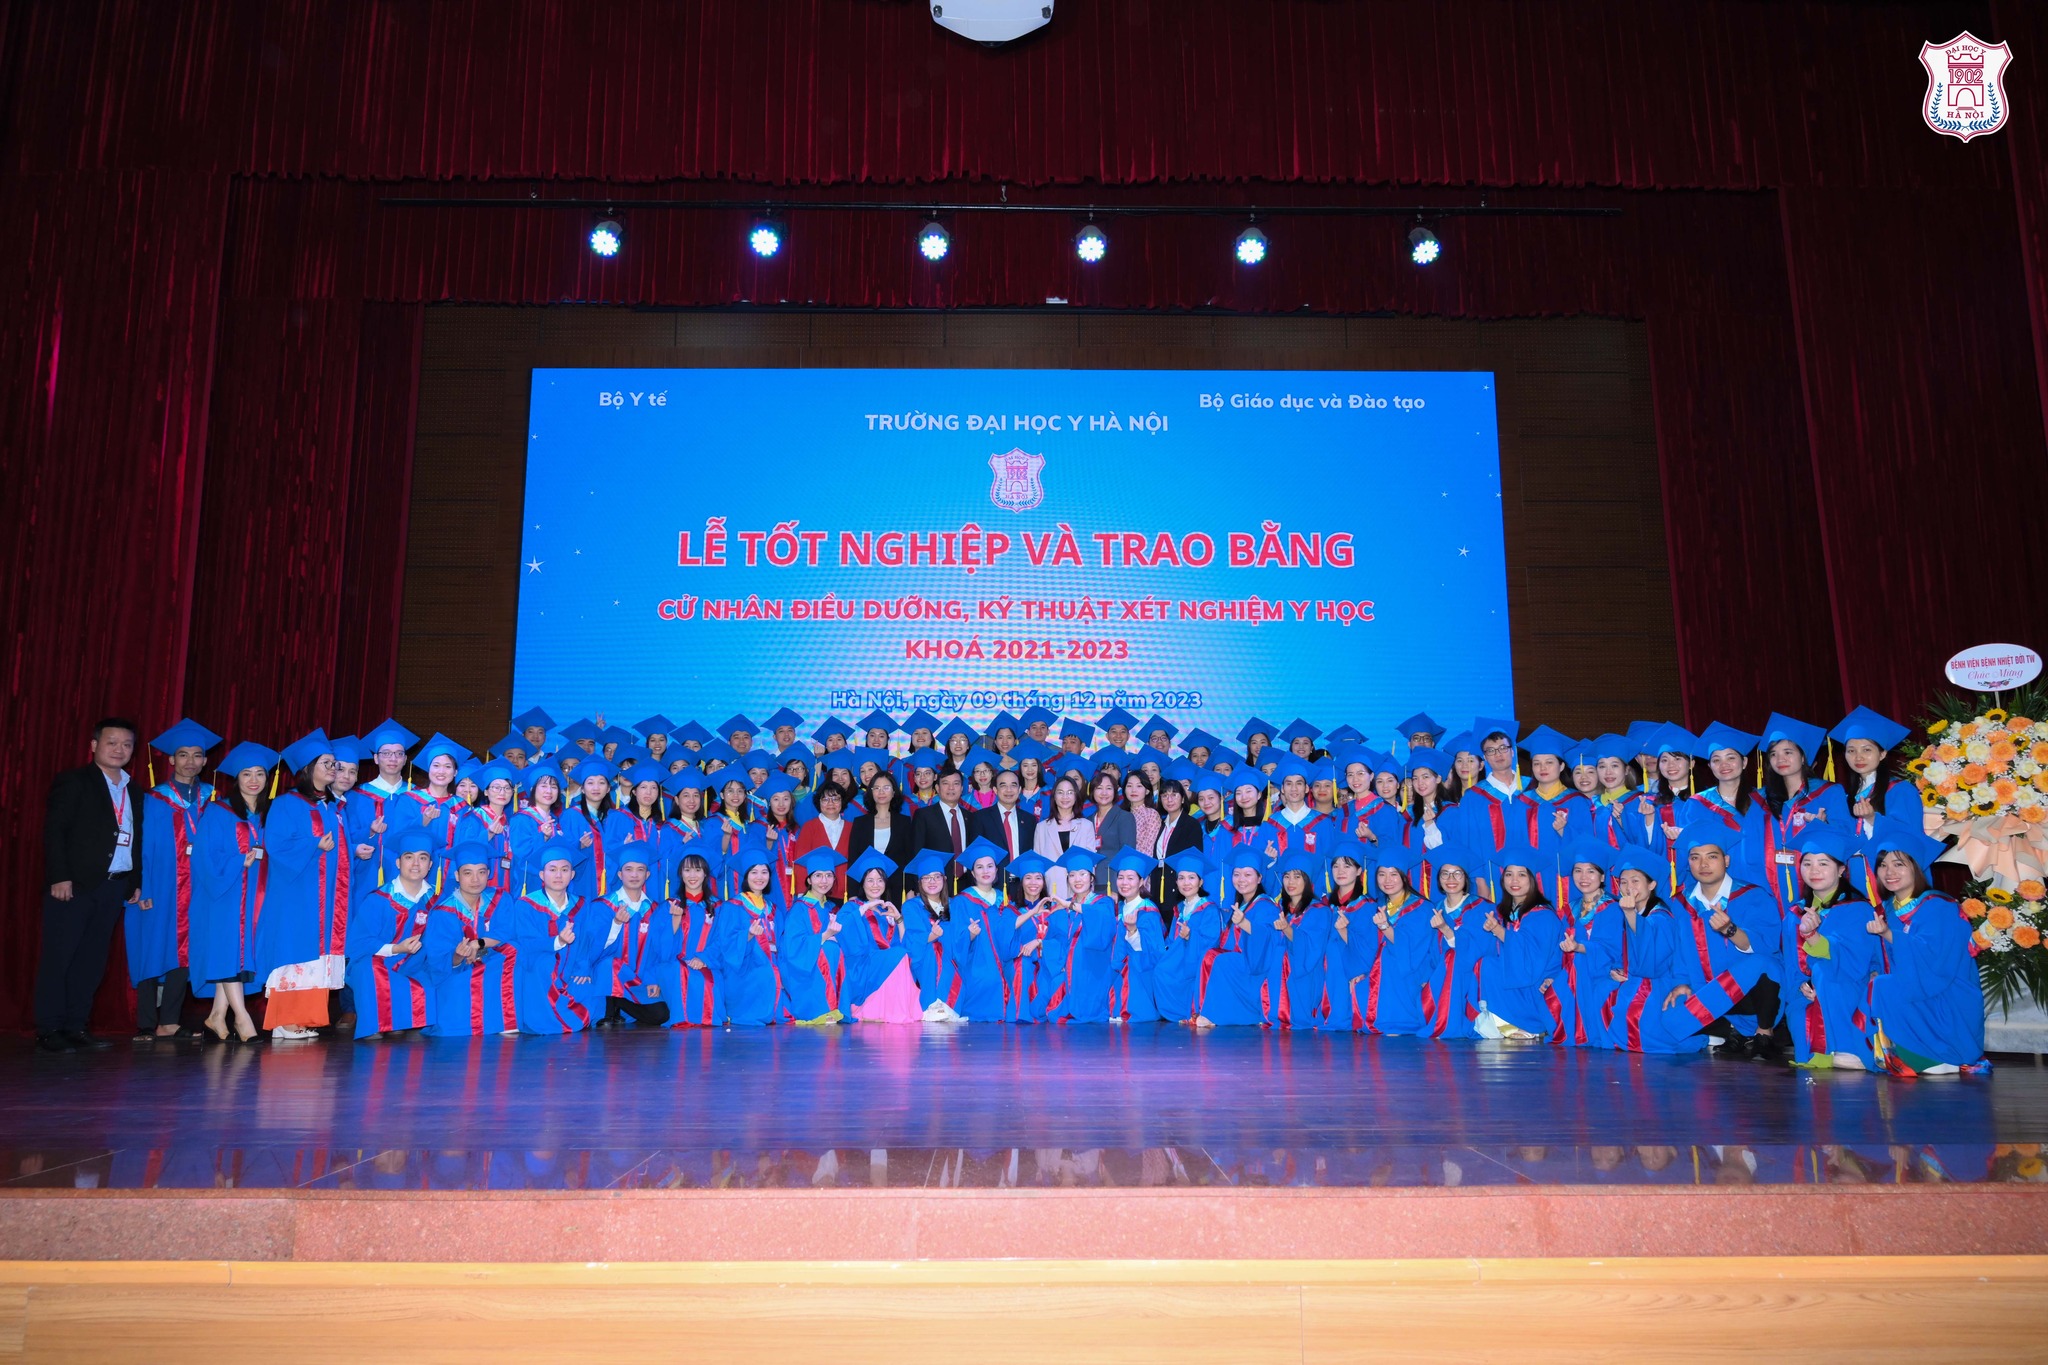 Điểm chuẩn Đại học Y Hà Nội năm 2023